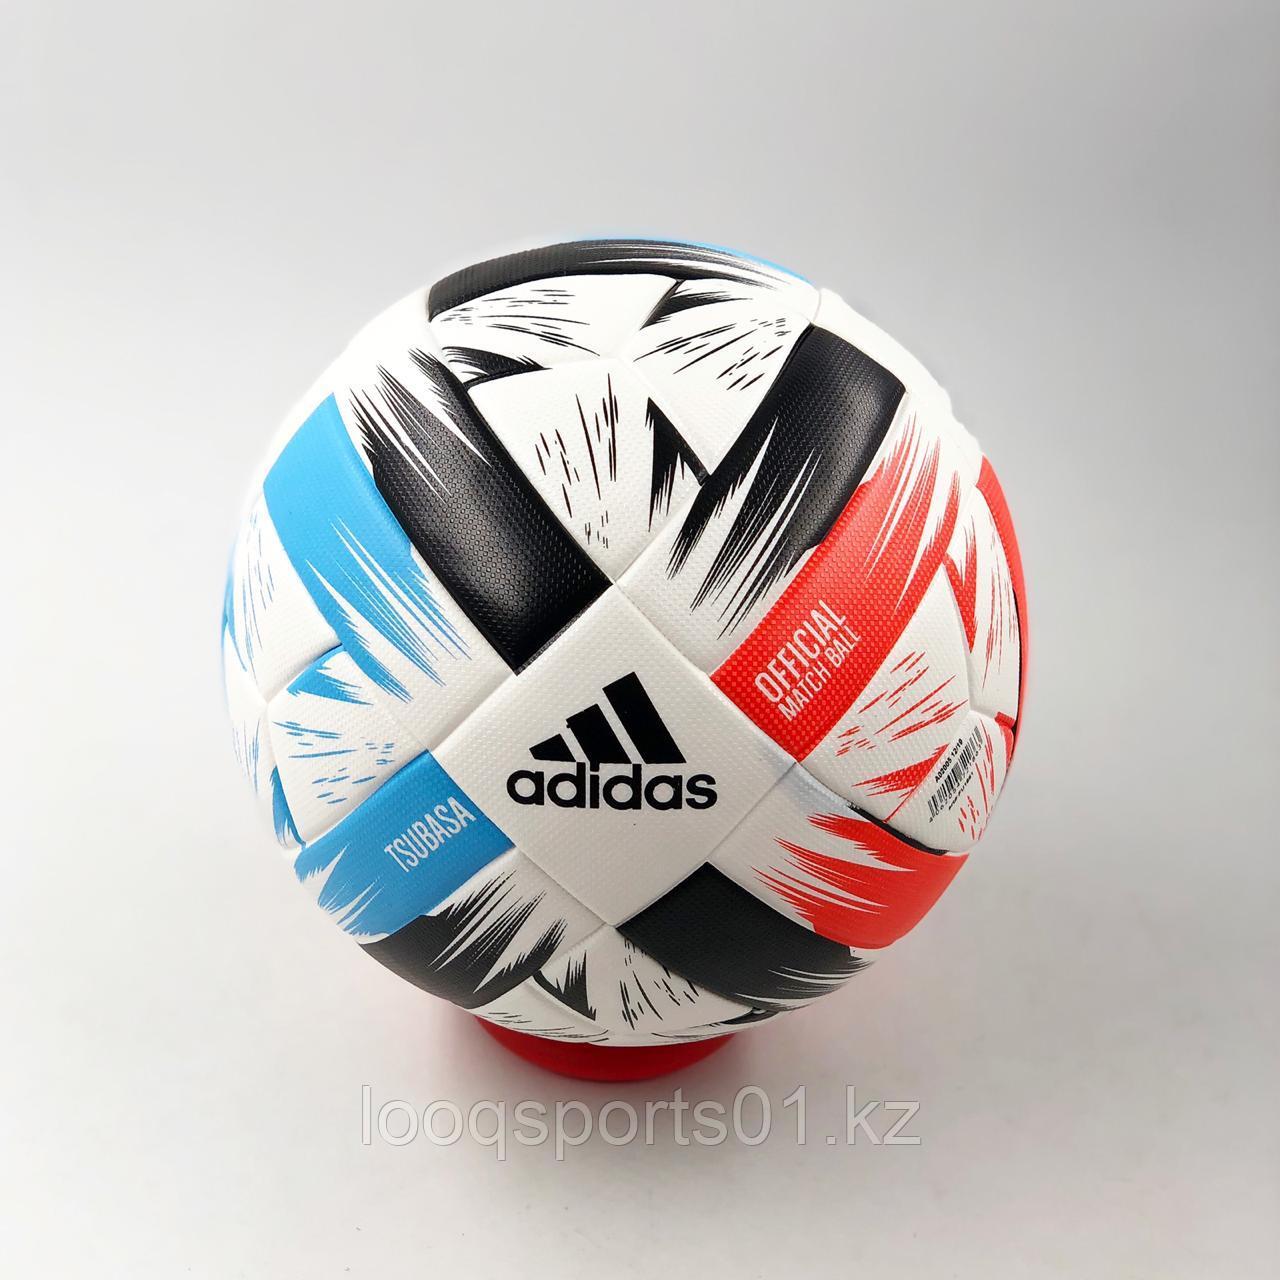 Футбольный мяч Adidas Tsubasa League (5 размер)